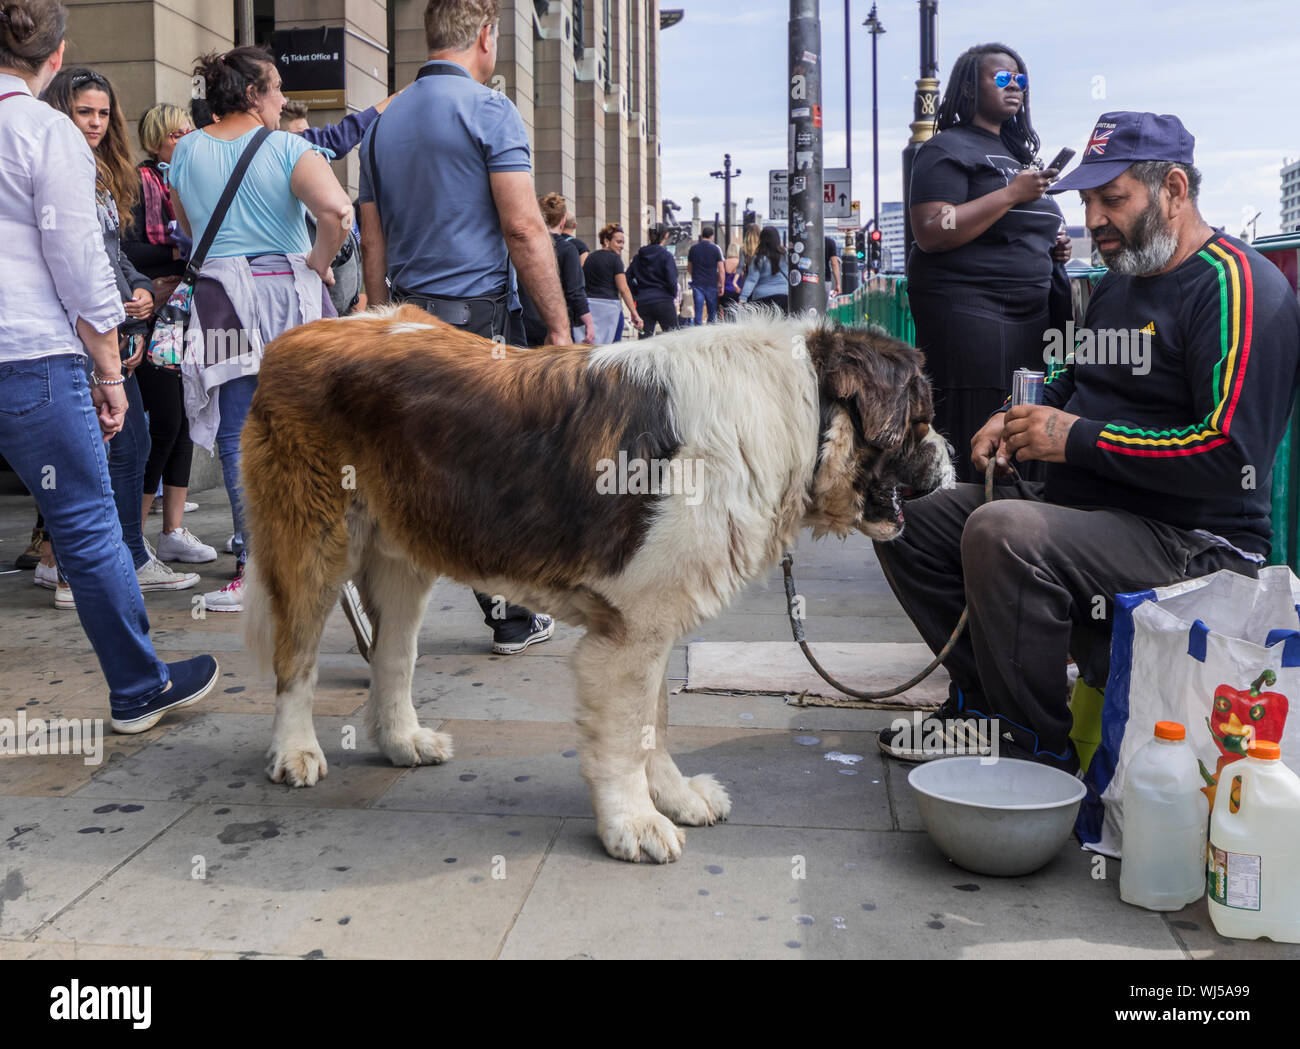 Gran raza de perro San Bernardo en las calles de Londres, con un hombre  apareciendo posiblemente ser personas sin hogar o que viven en las calles,  en el Reino Unido Fotografía de